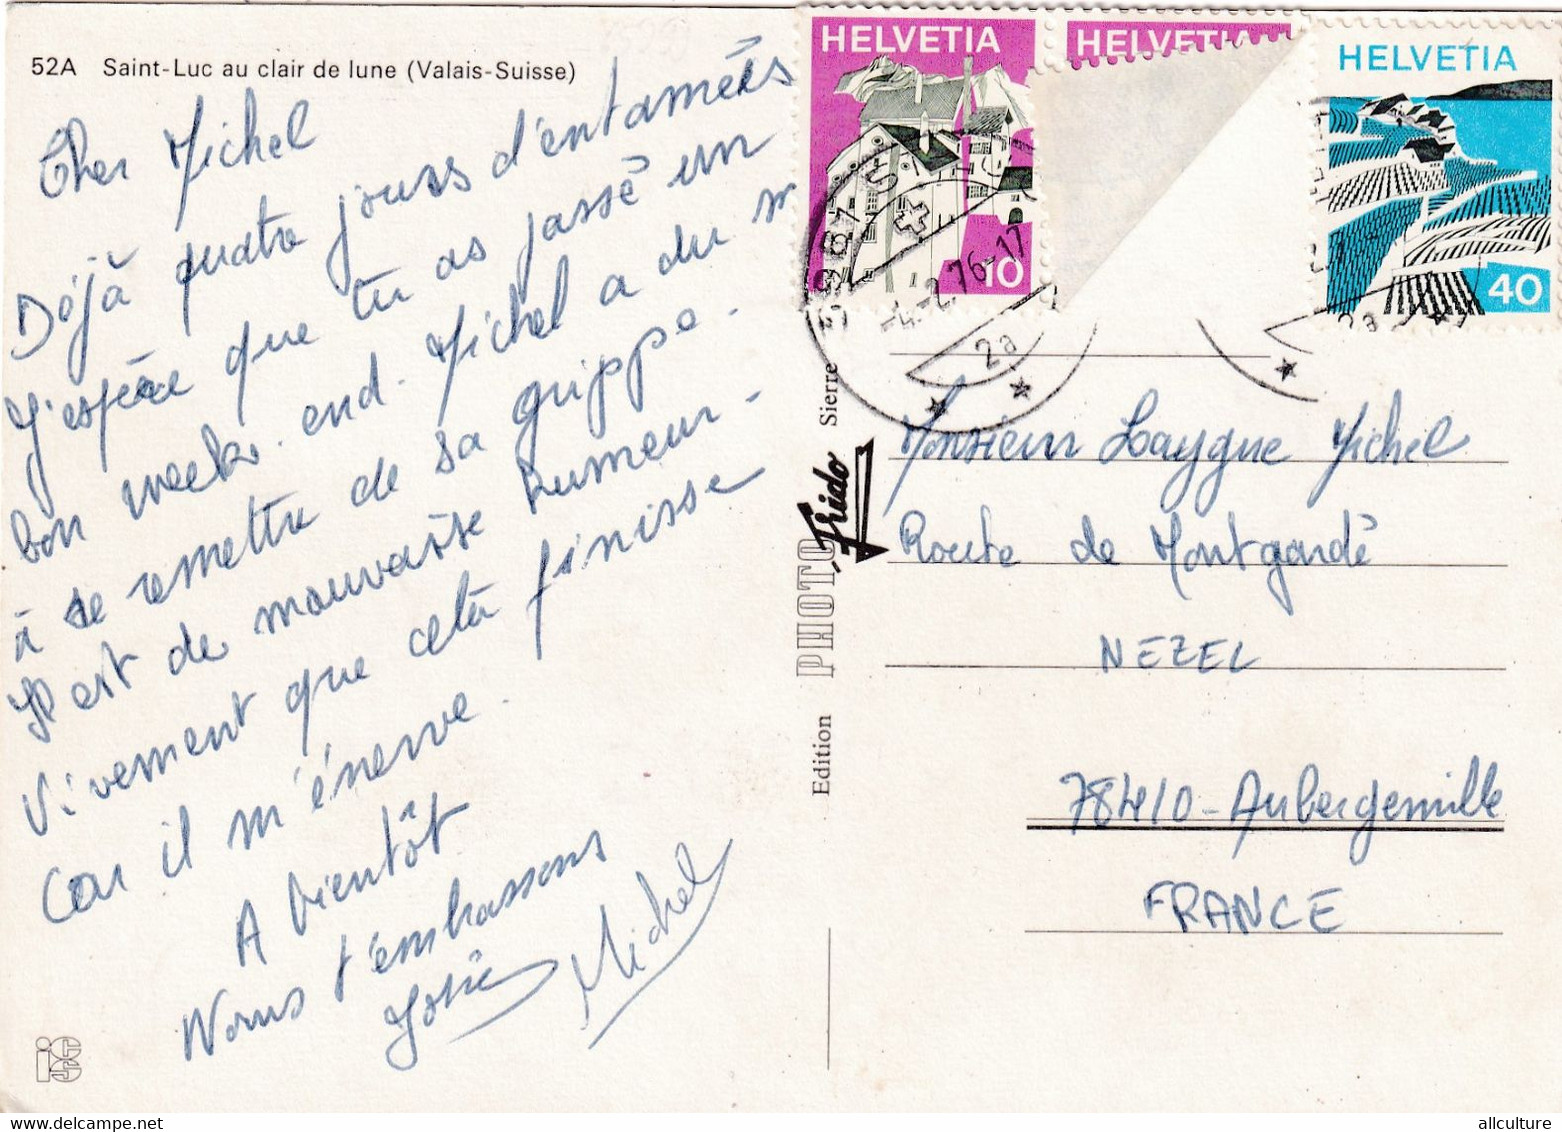 A5268- Saint-Luc Au Clair De Lune, Valais Suisse 1976, Switzerland Helvetia Stamp Postcard - Saint-Luc